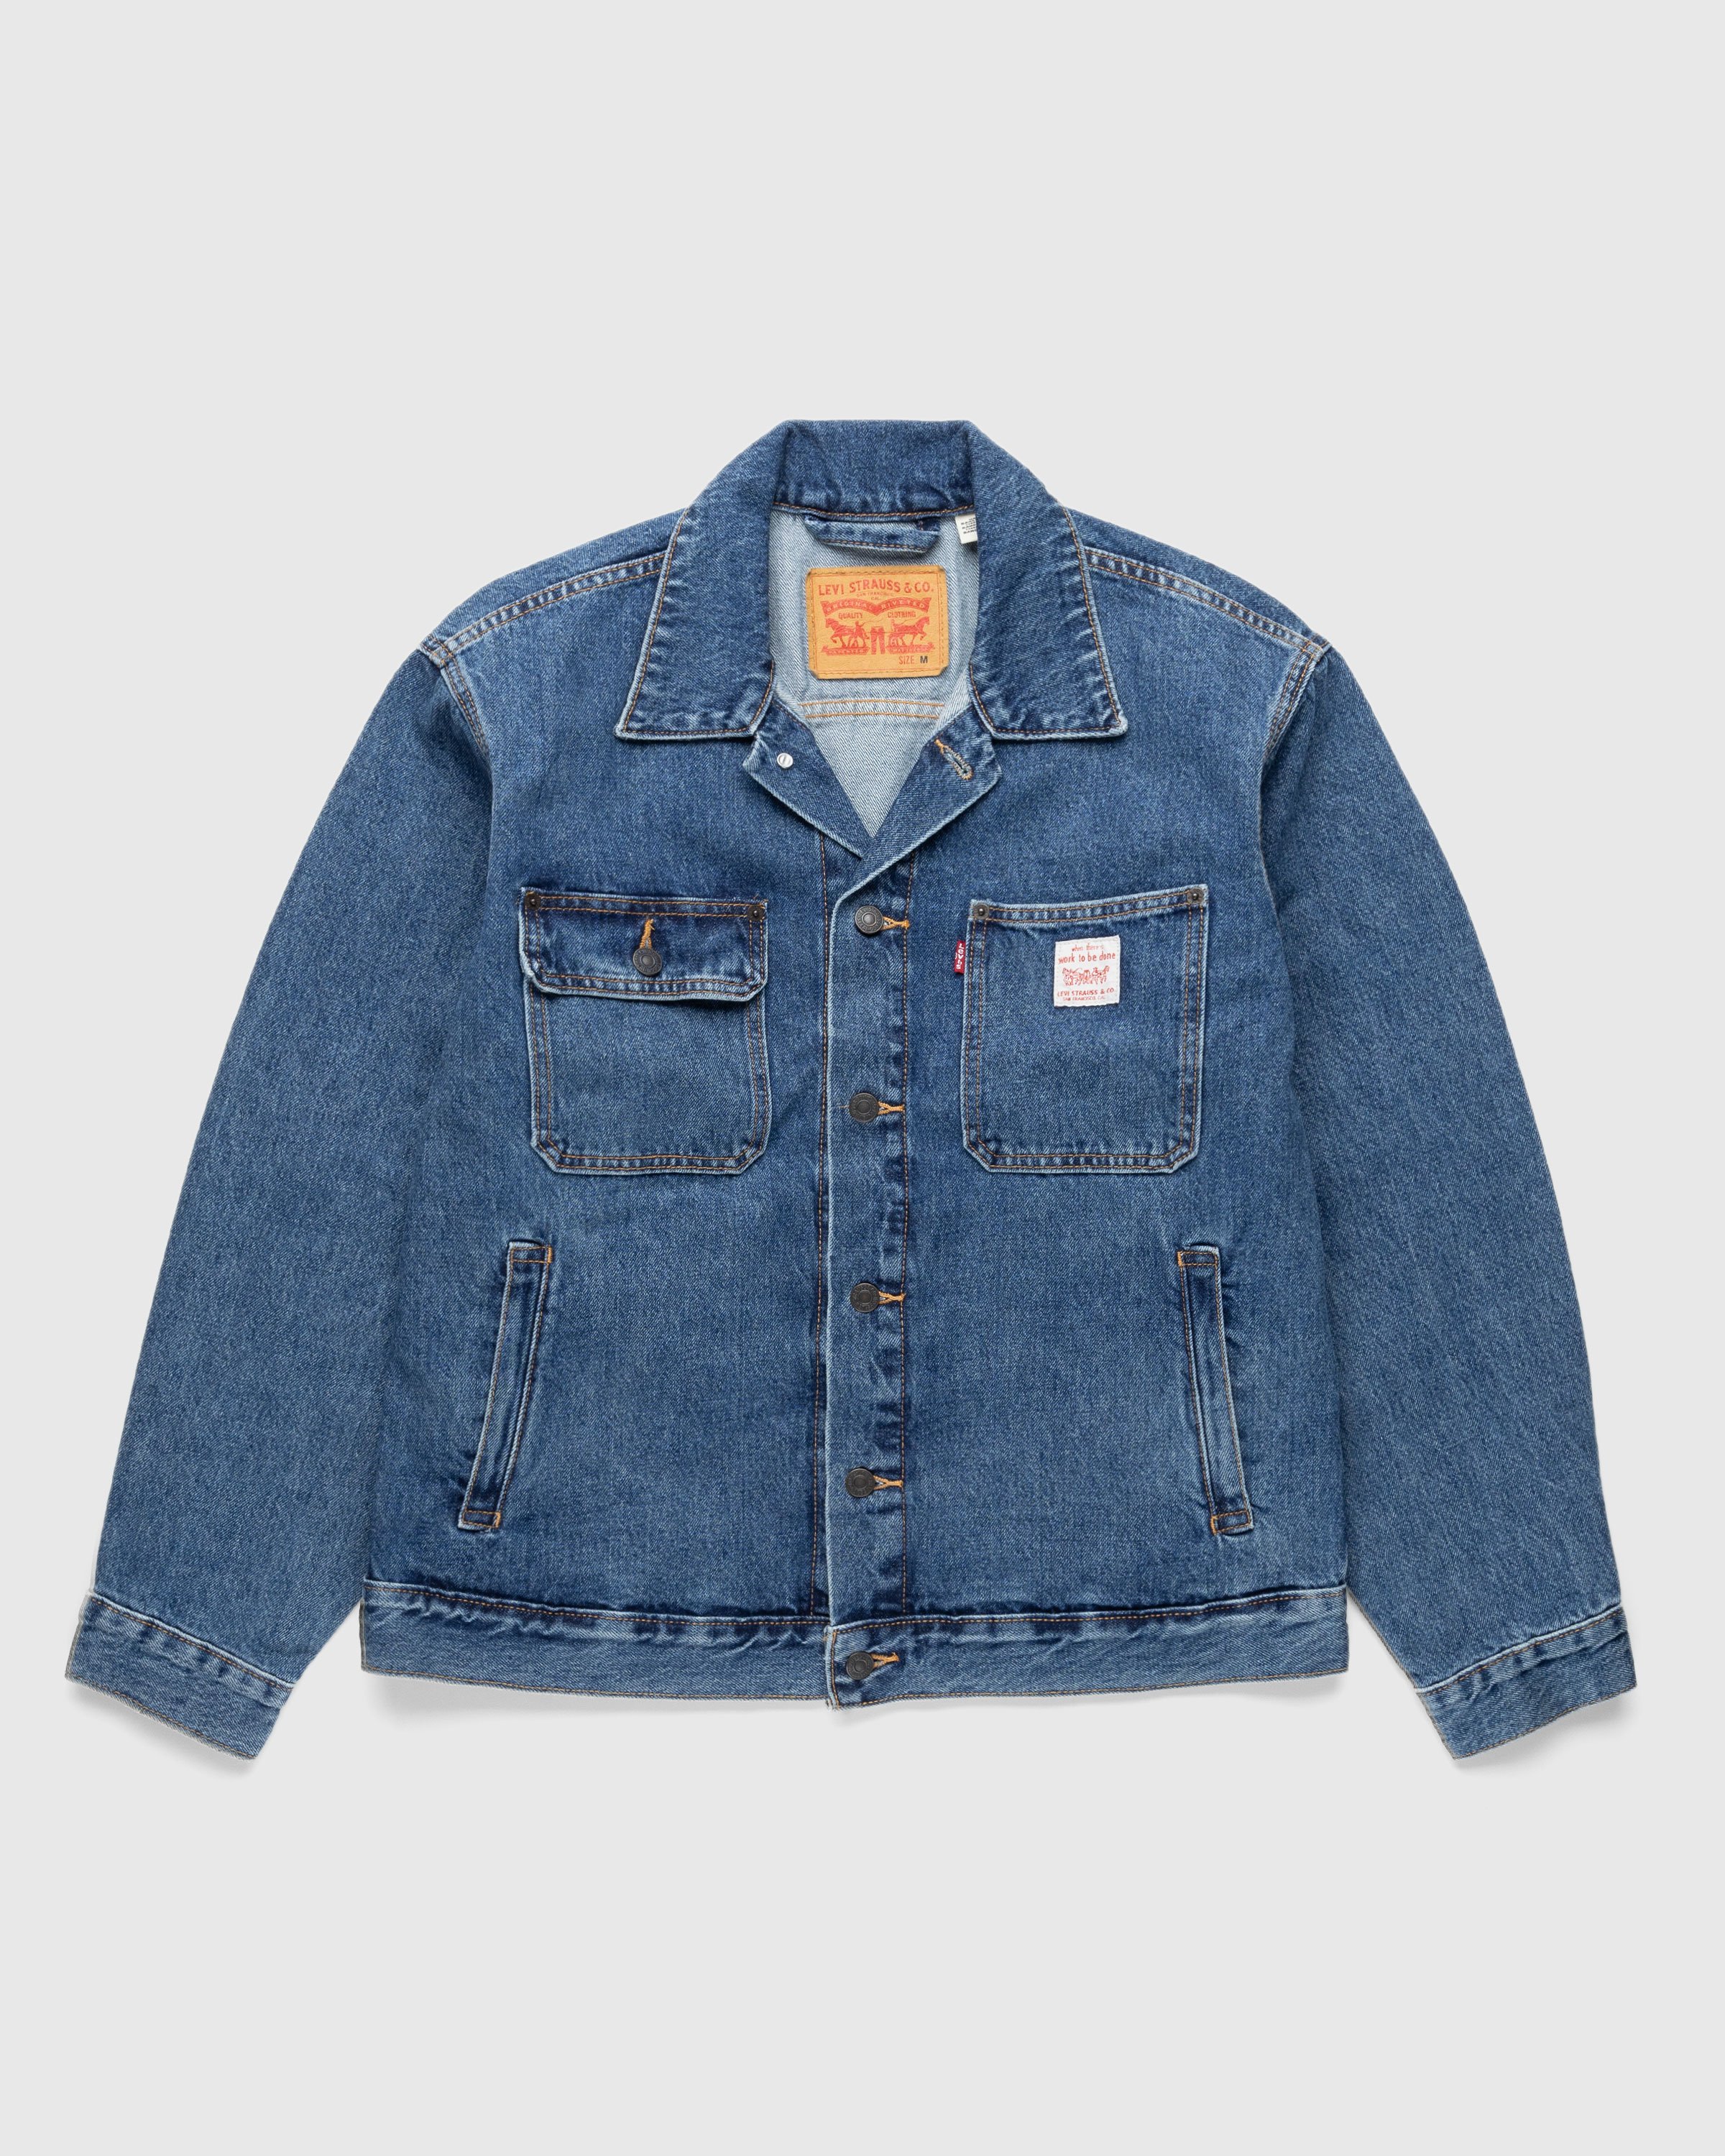 Levi's - Sunrise Trucker Jacket Medium Indigo - Clothing - Blue - Image 1